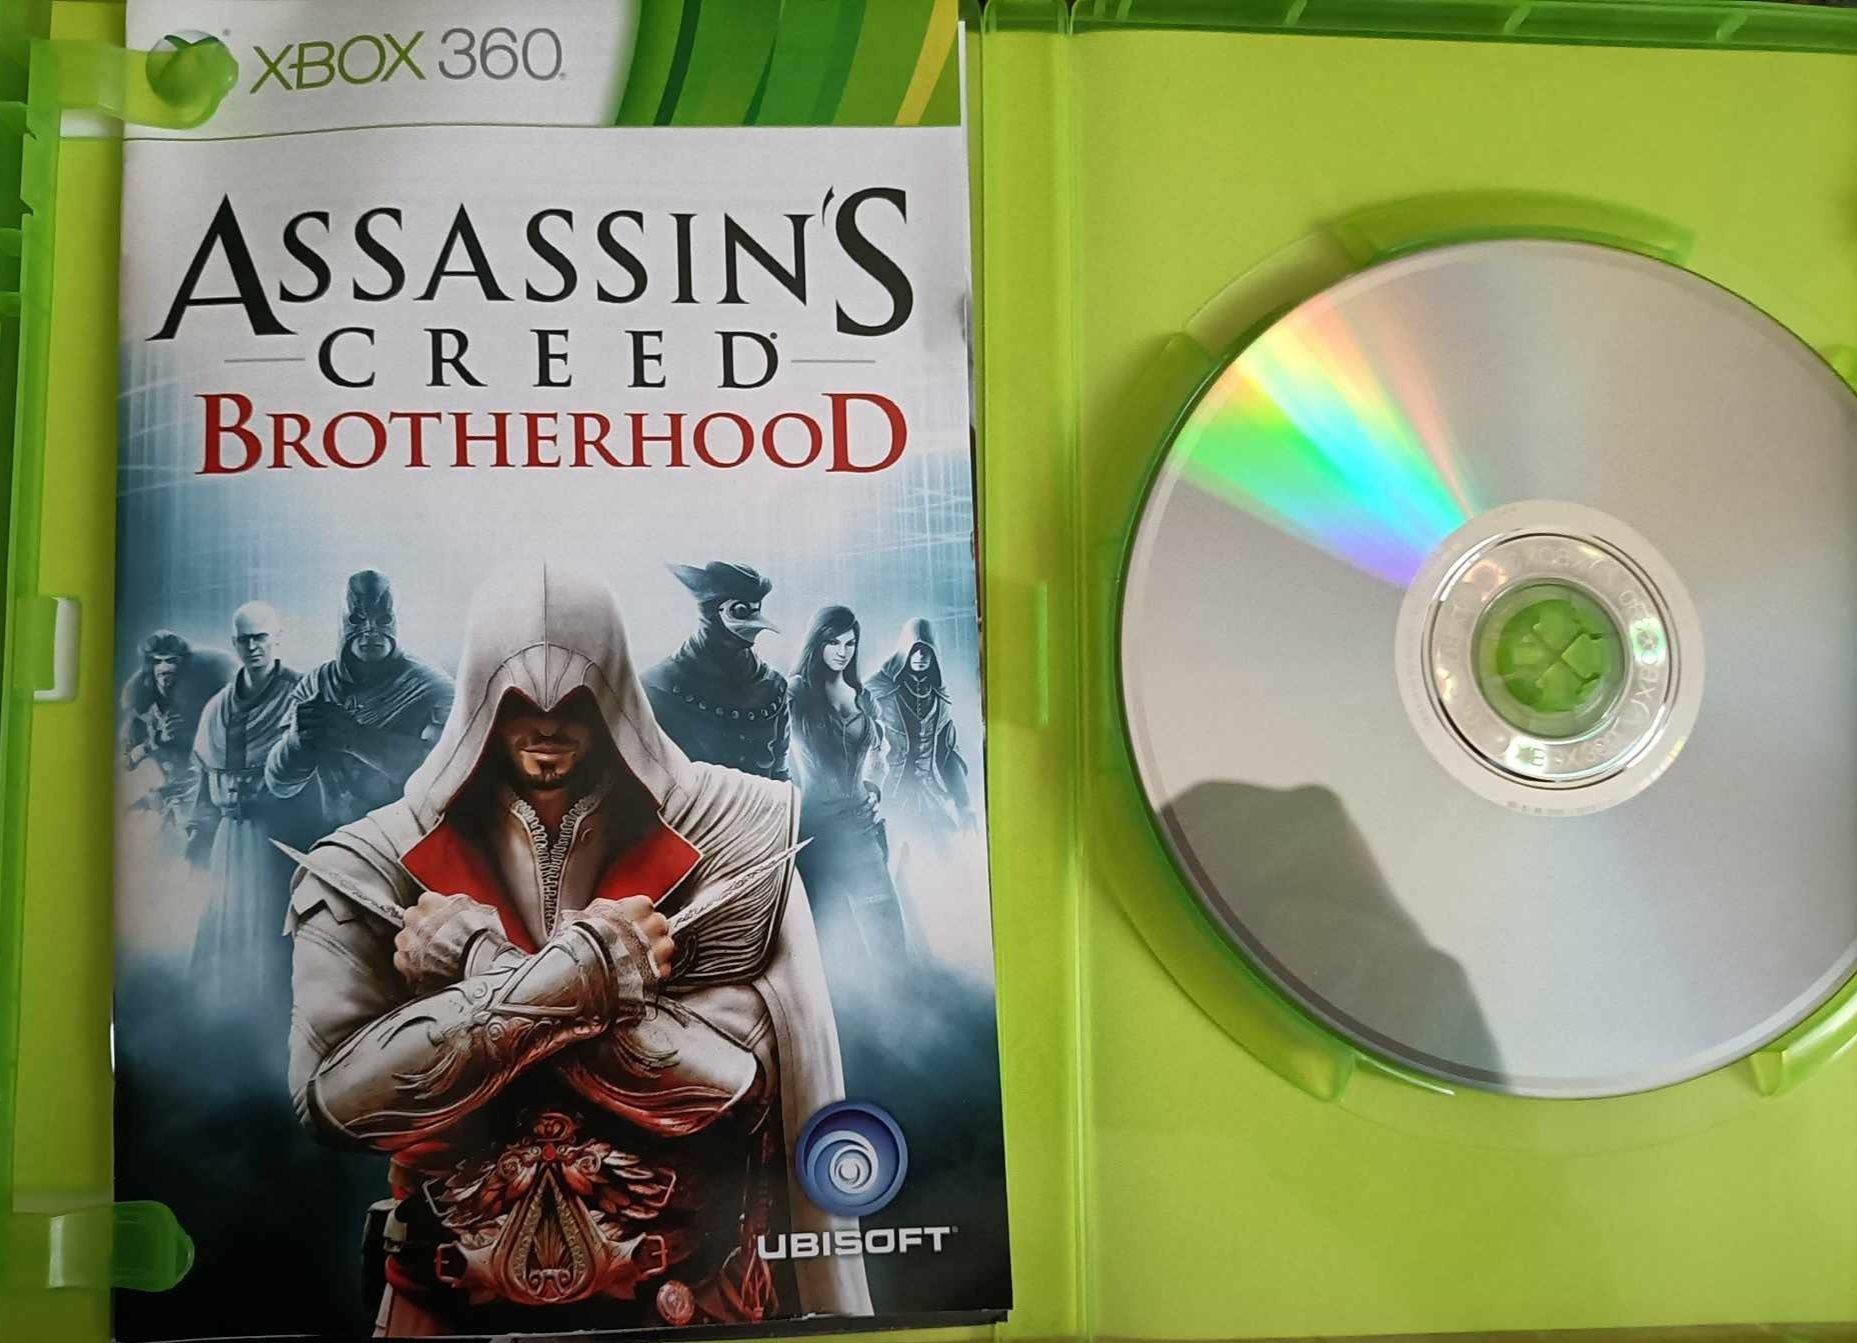 Assassin's Creed brotherhood xbox